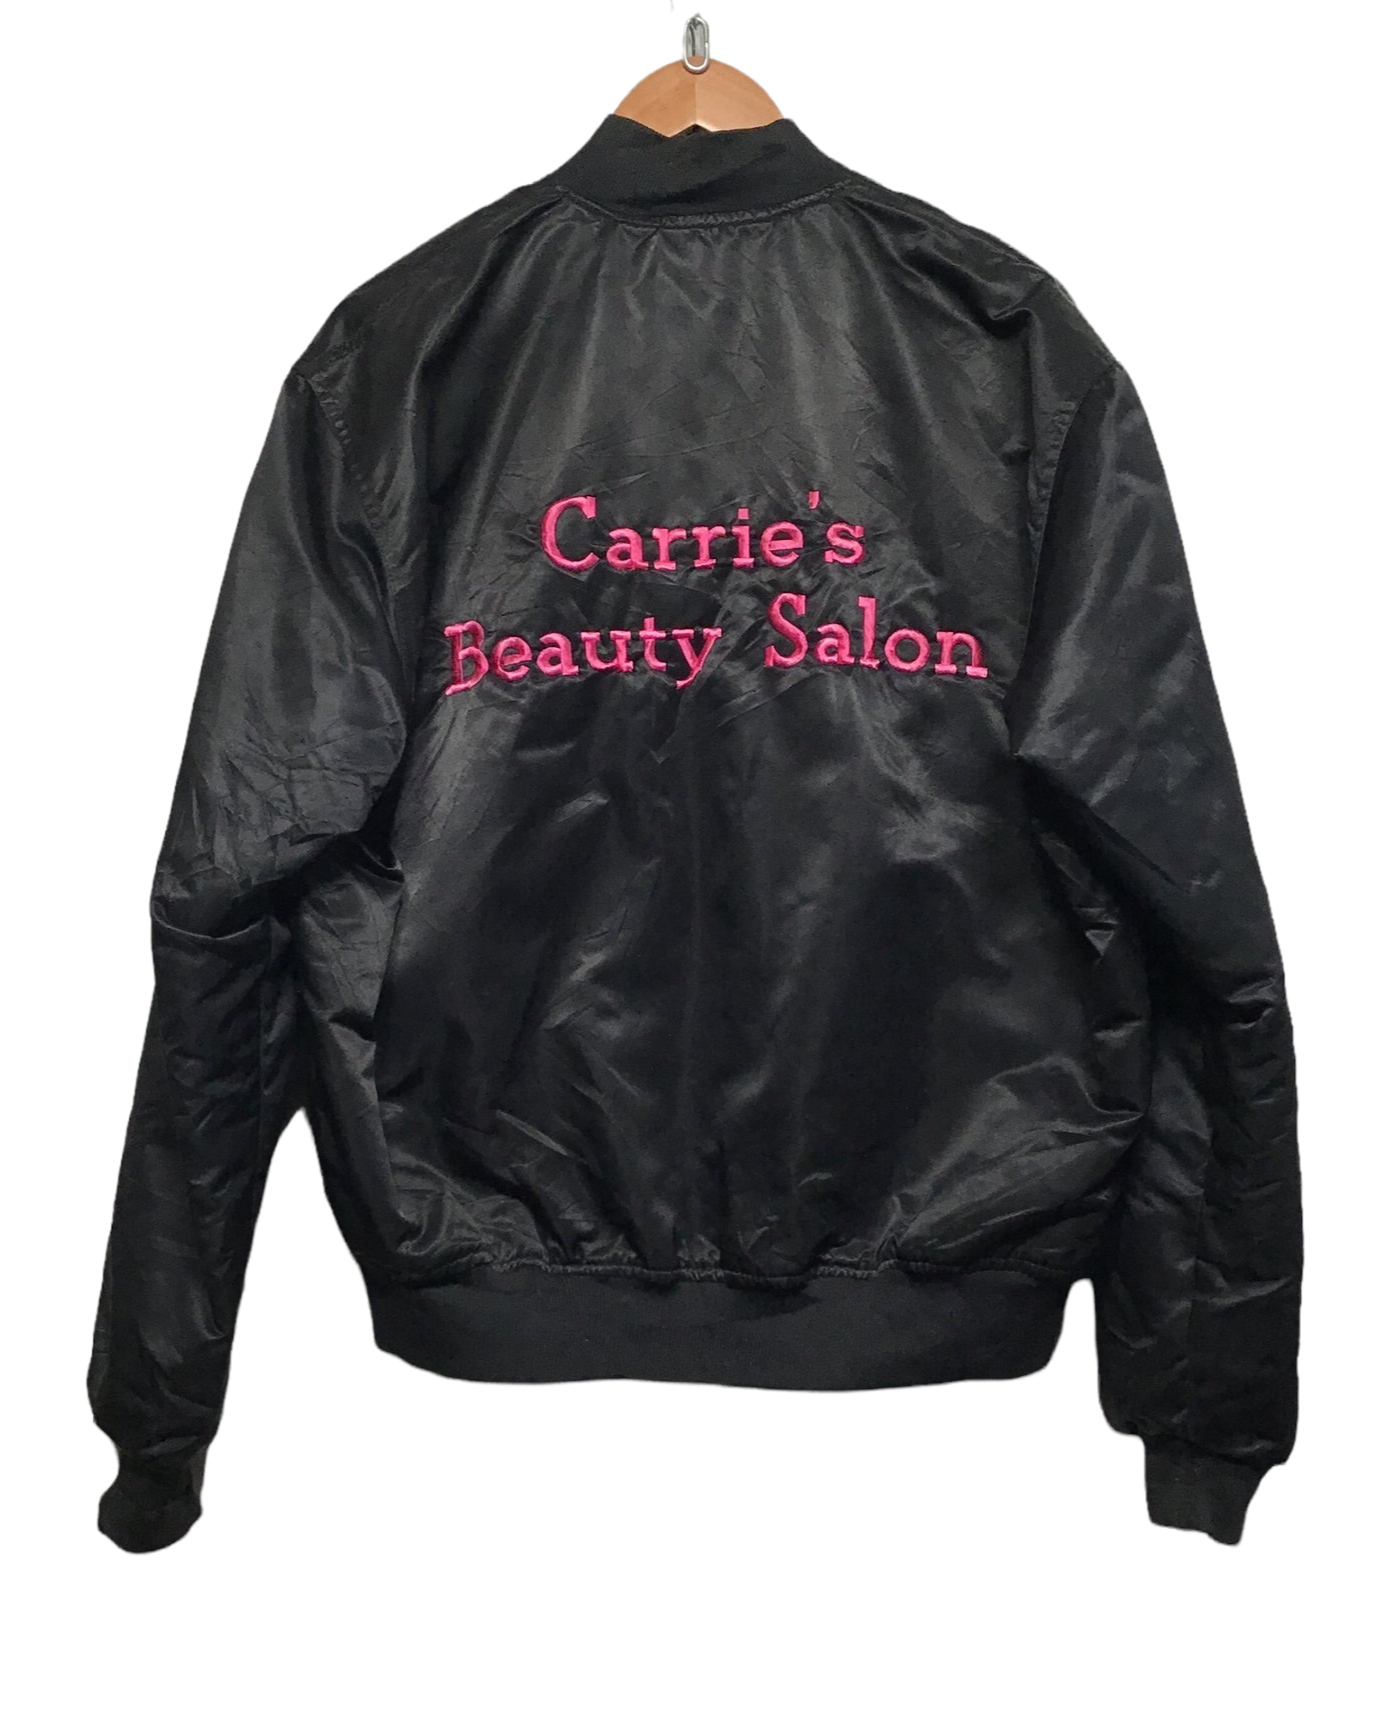 ‘Carrie’s Beauty Salon’ Bomber Jacket (Size L)